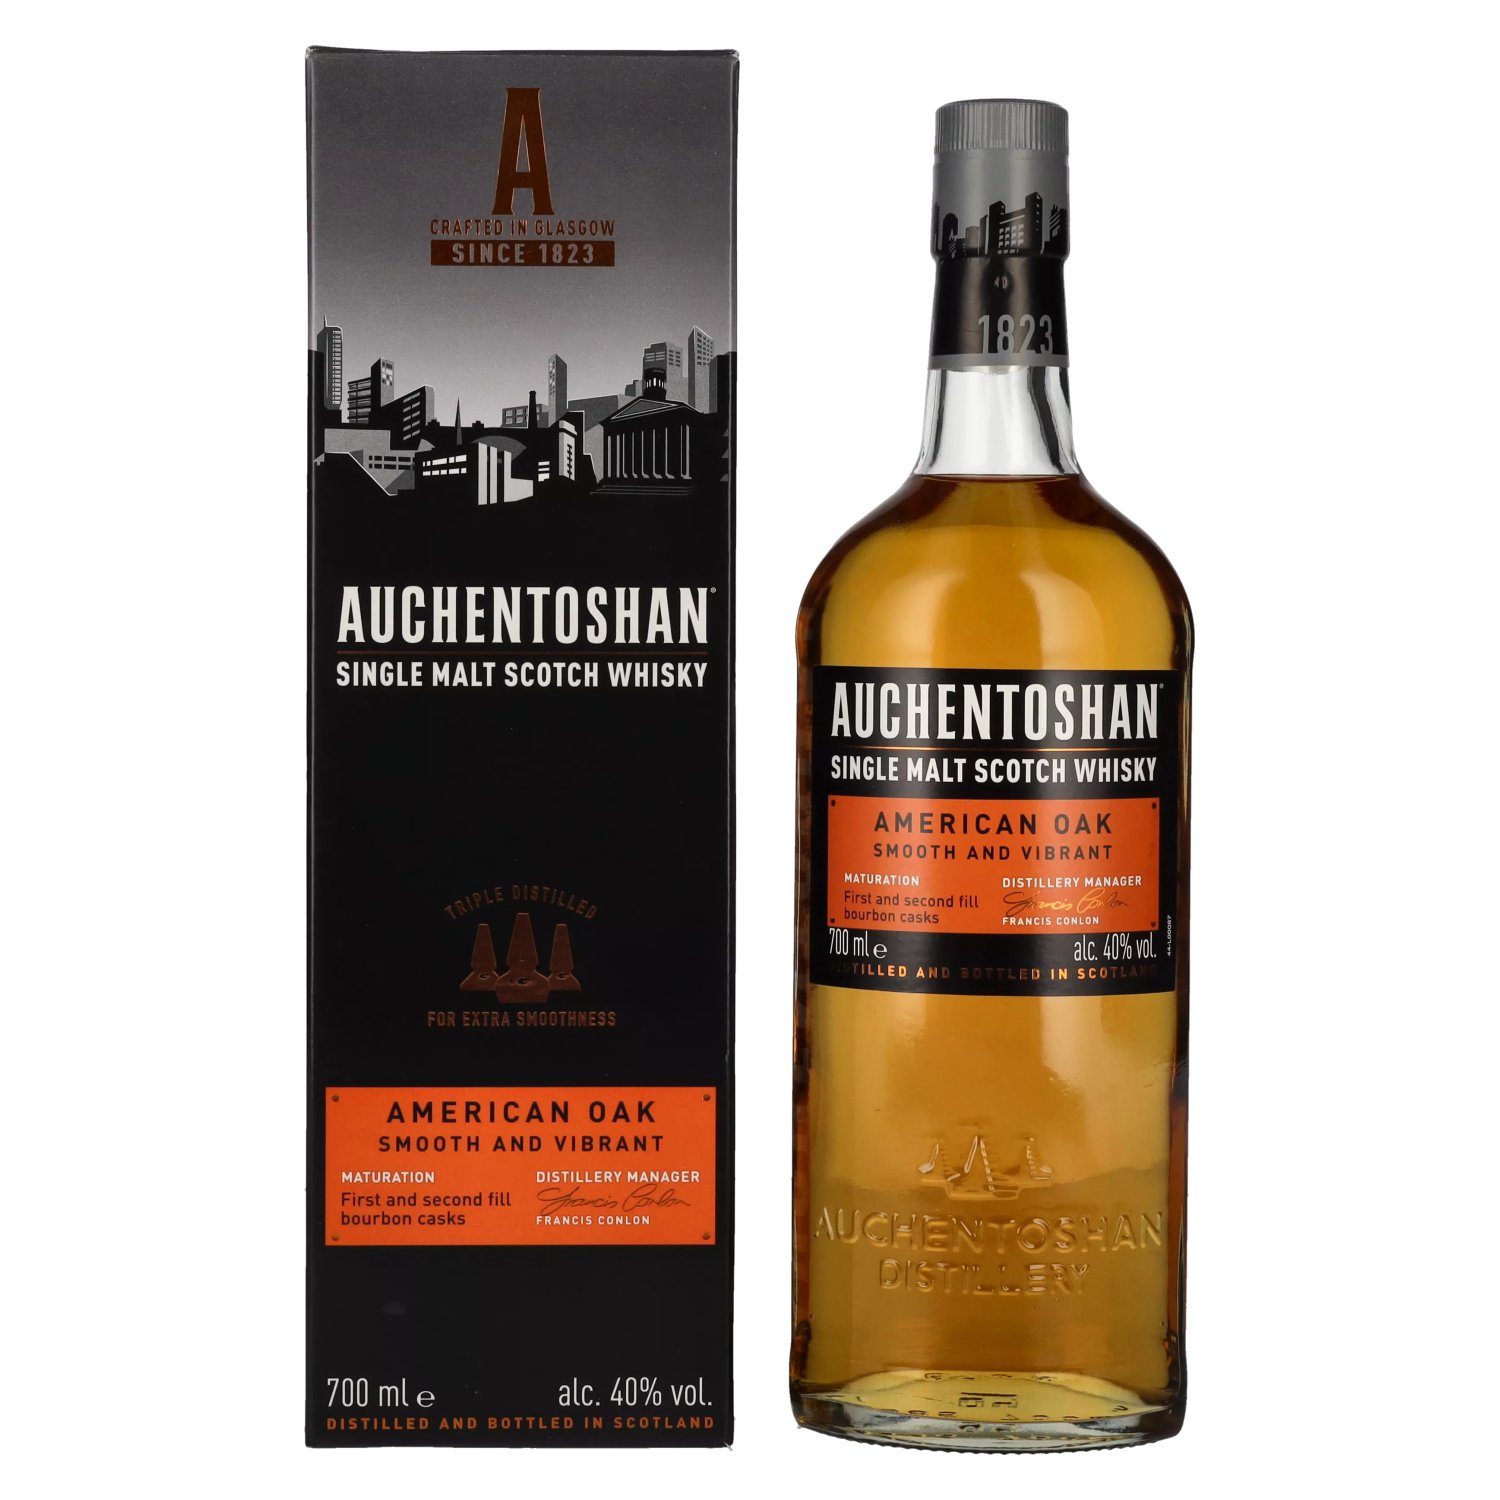 Single Whisky Auchentoshan in Malt 40% 0,7l Geschenkbox OAK AMERICAN Vol. Scotch